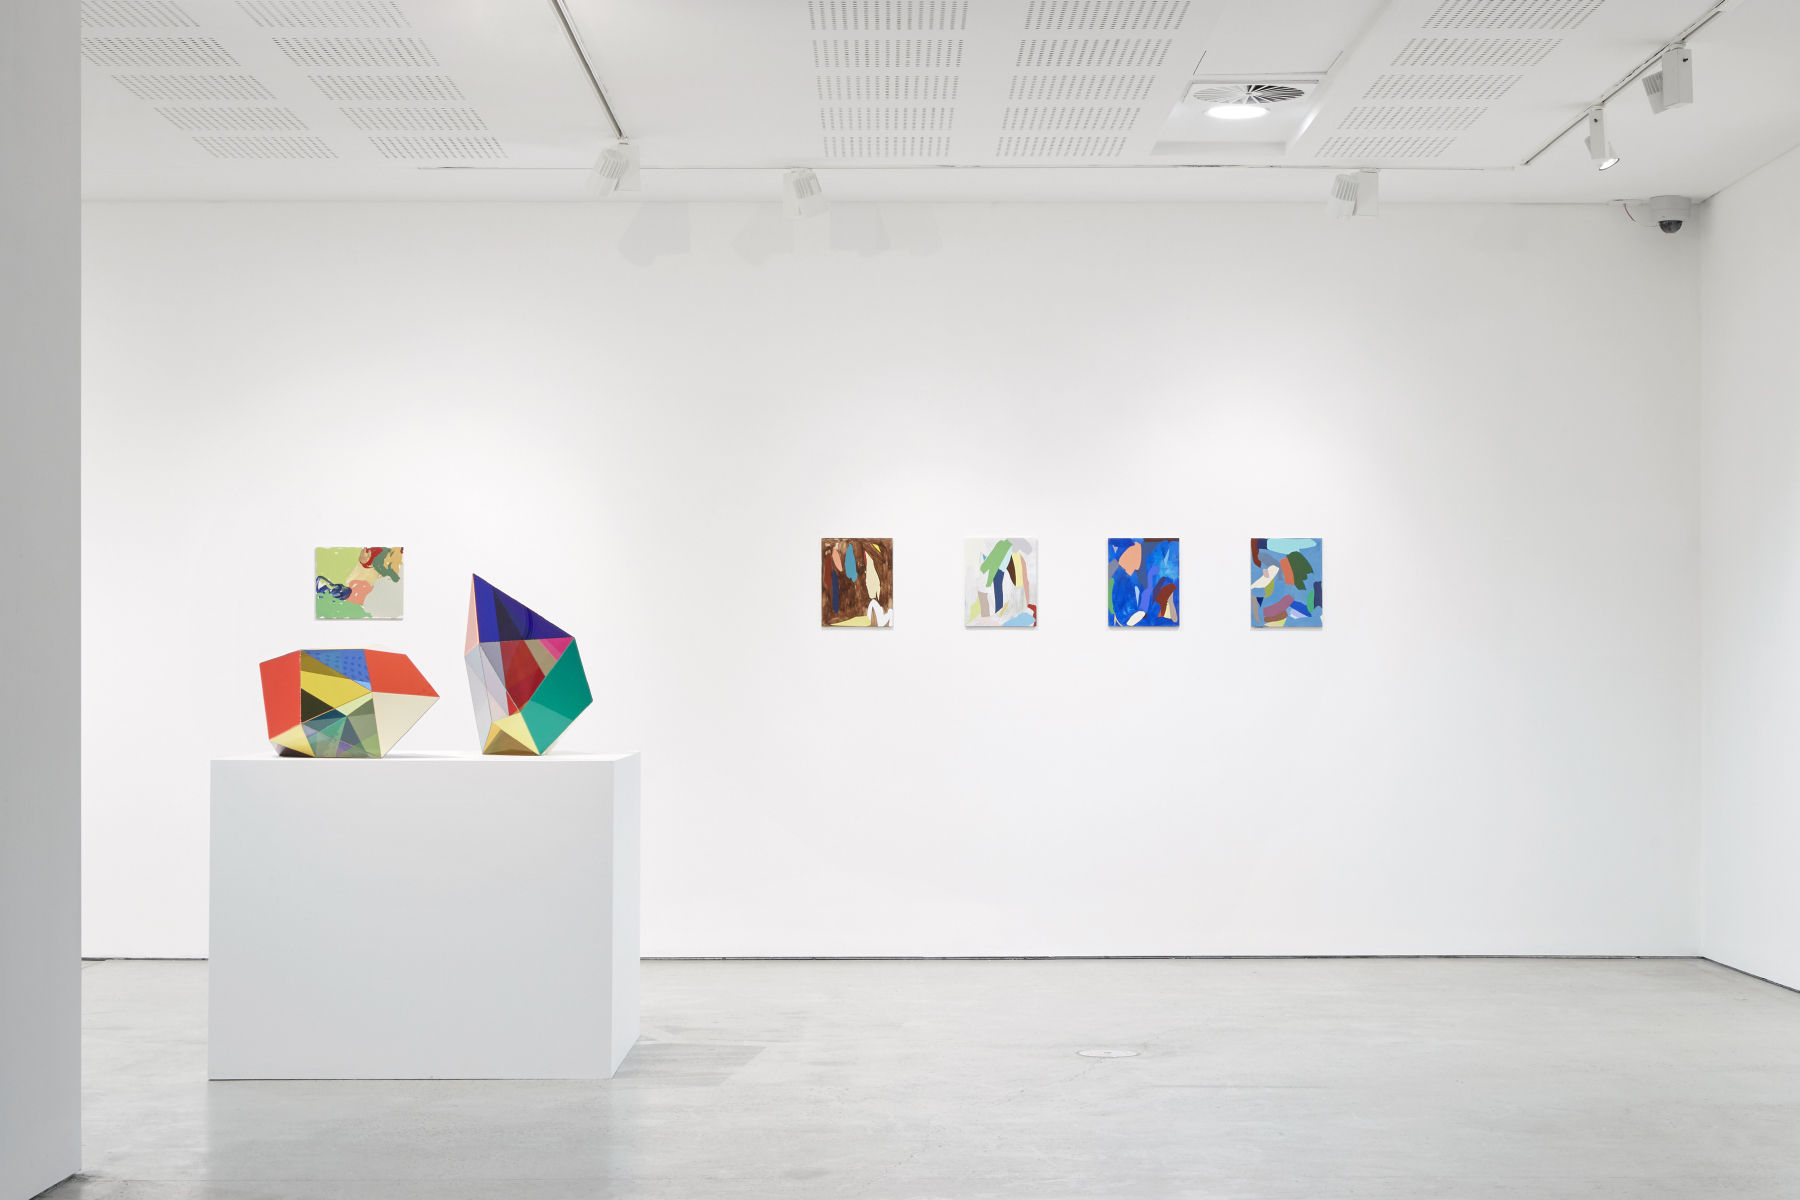  'Rhythm Sequence' 2019 UNSW Galleries, Sydney Installation view 